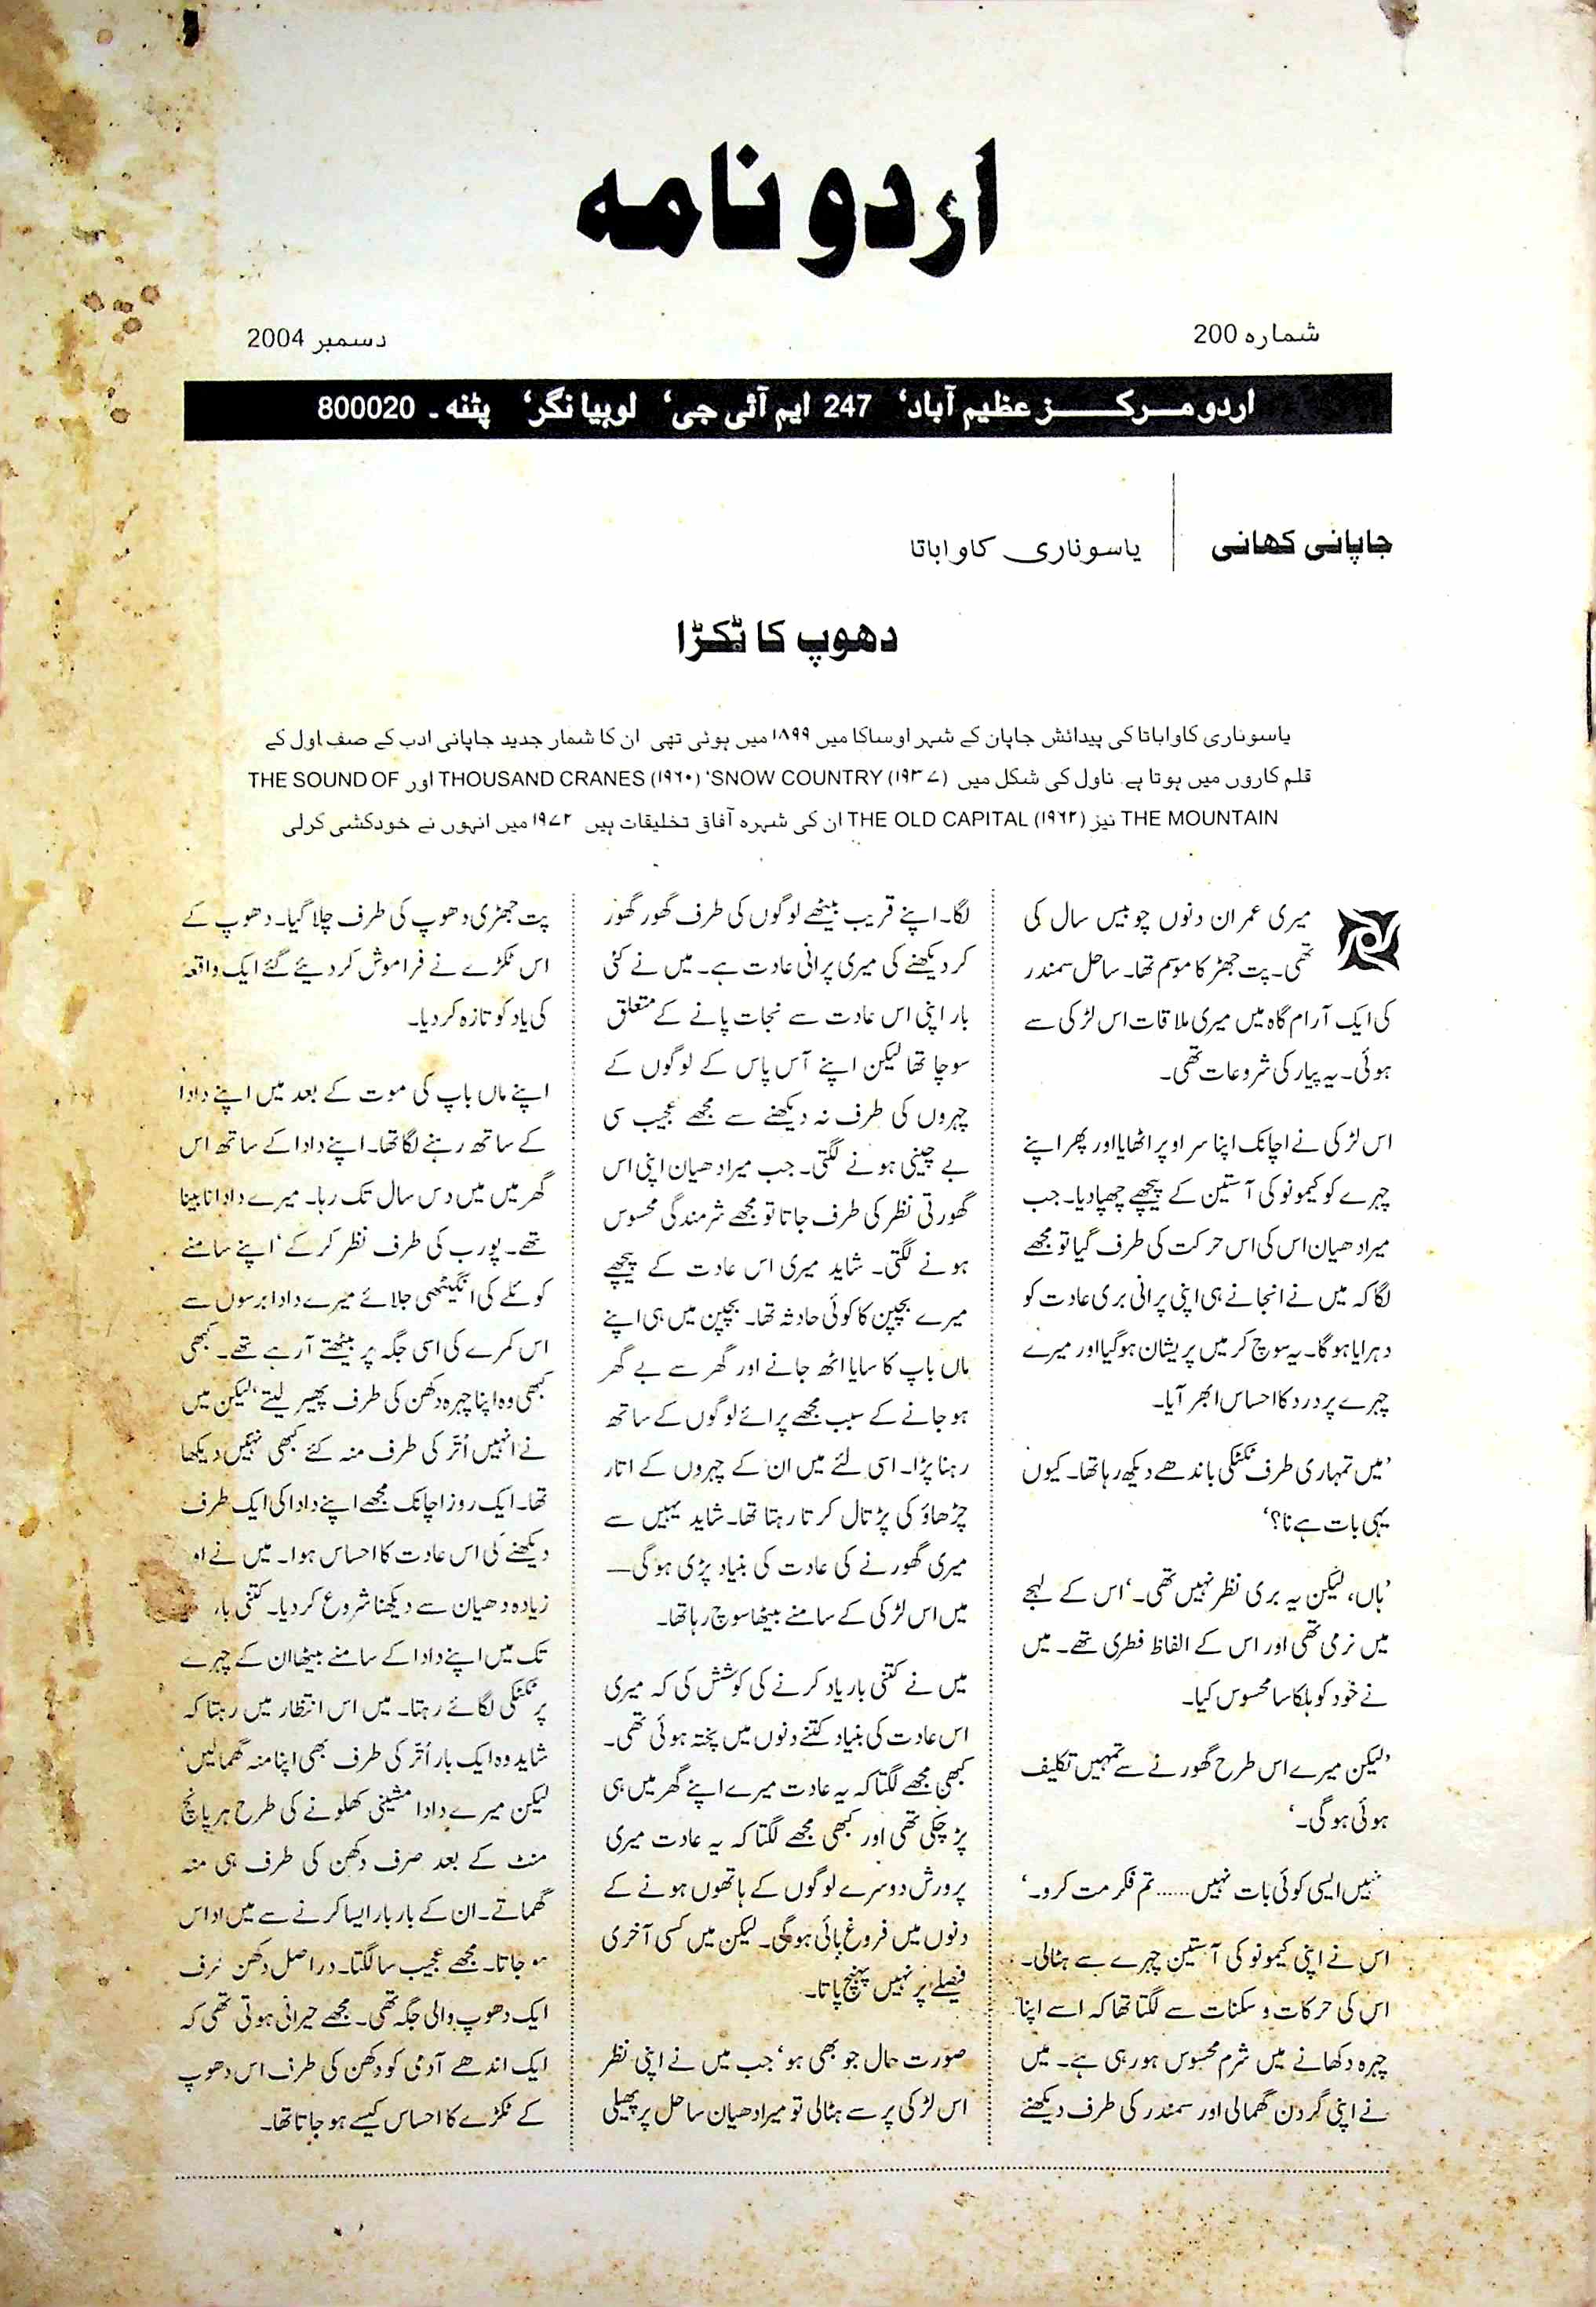 उर्दू नामा, पटना- Magazine by पाकीज़ा ऑफ़्सेट प्रेस, पट 